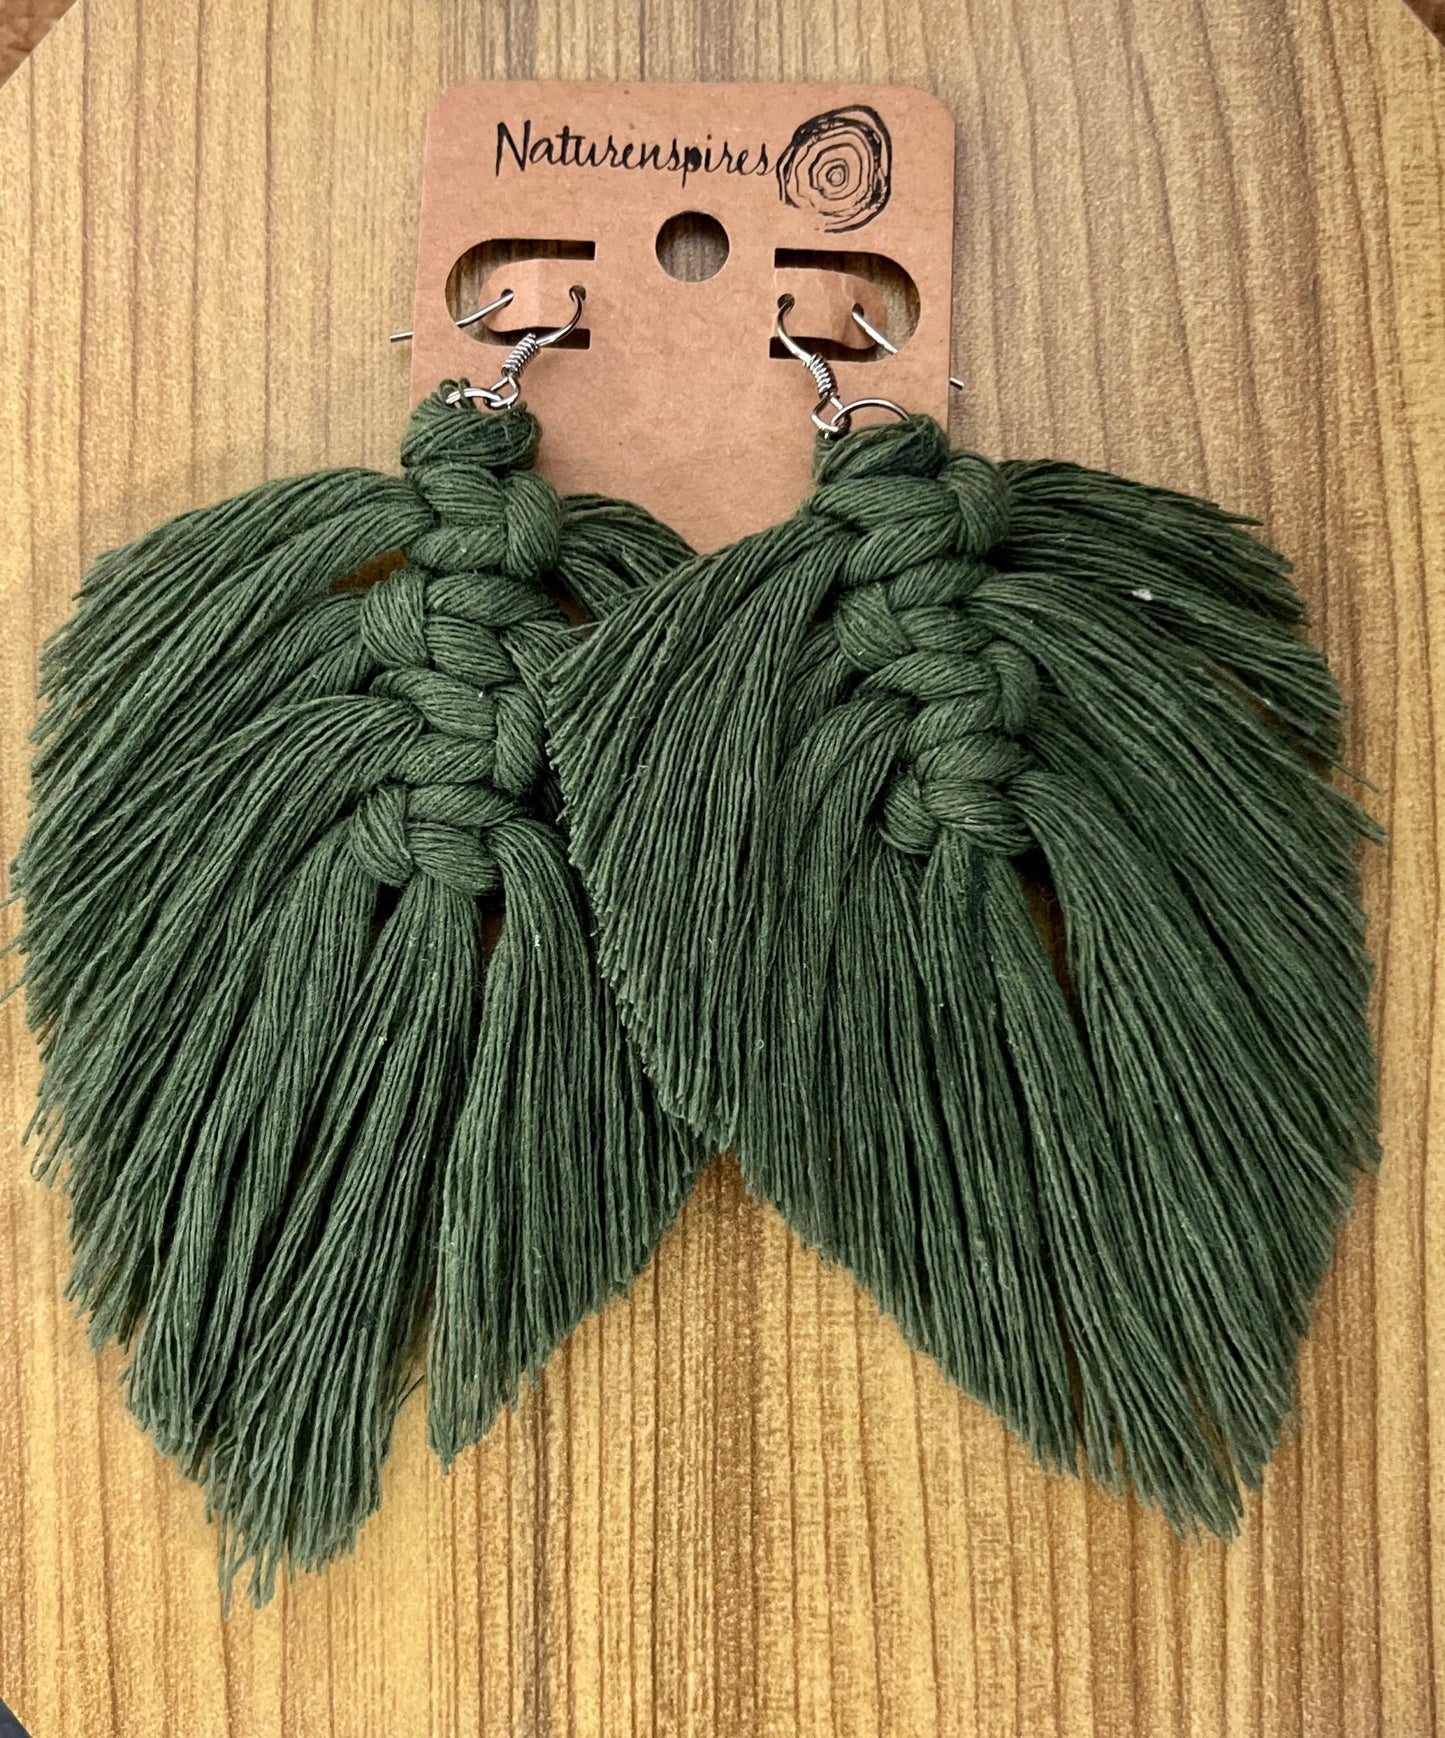 Large Macramé Leaf Earrings - Naturenspires